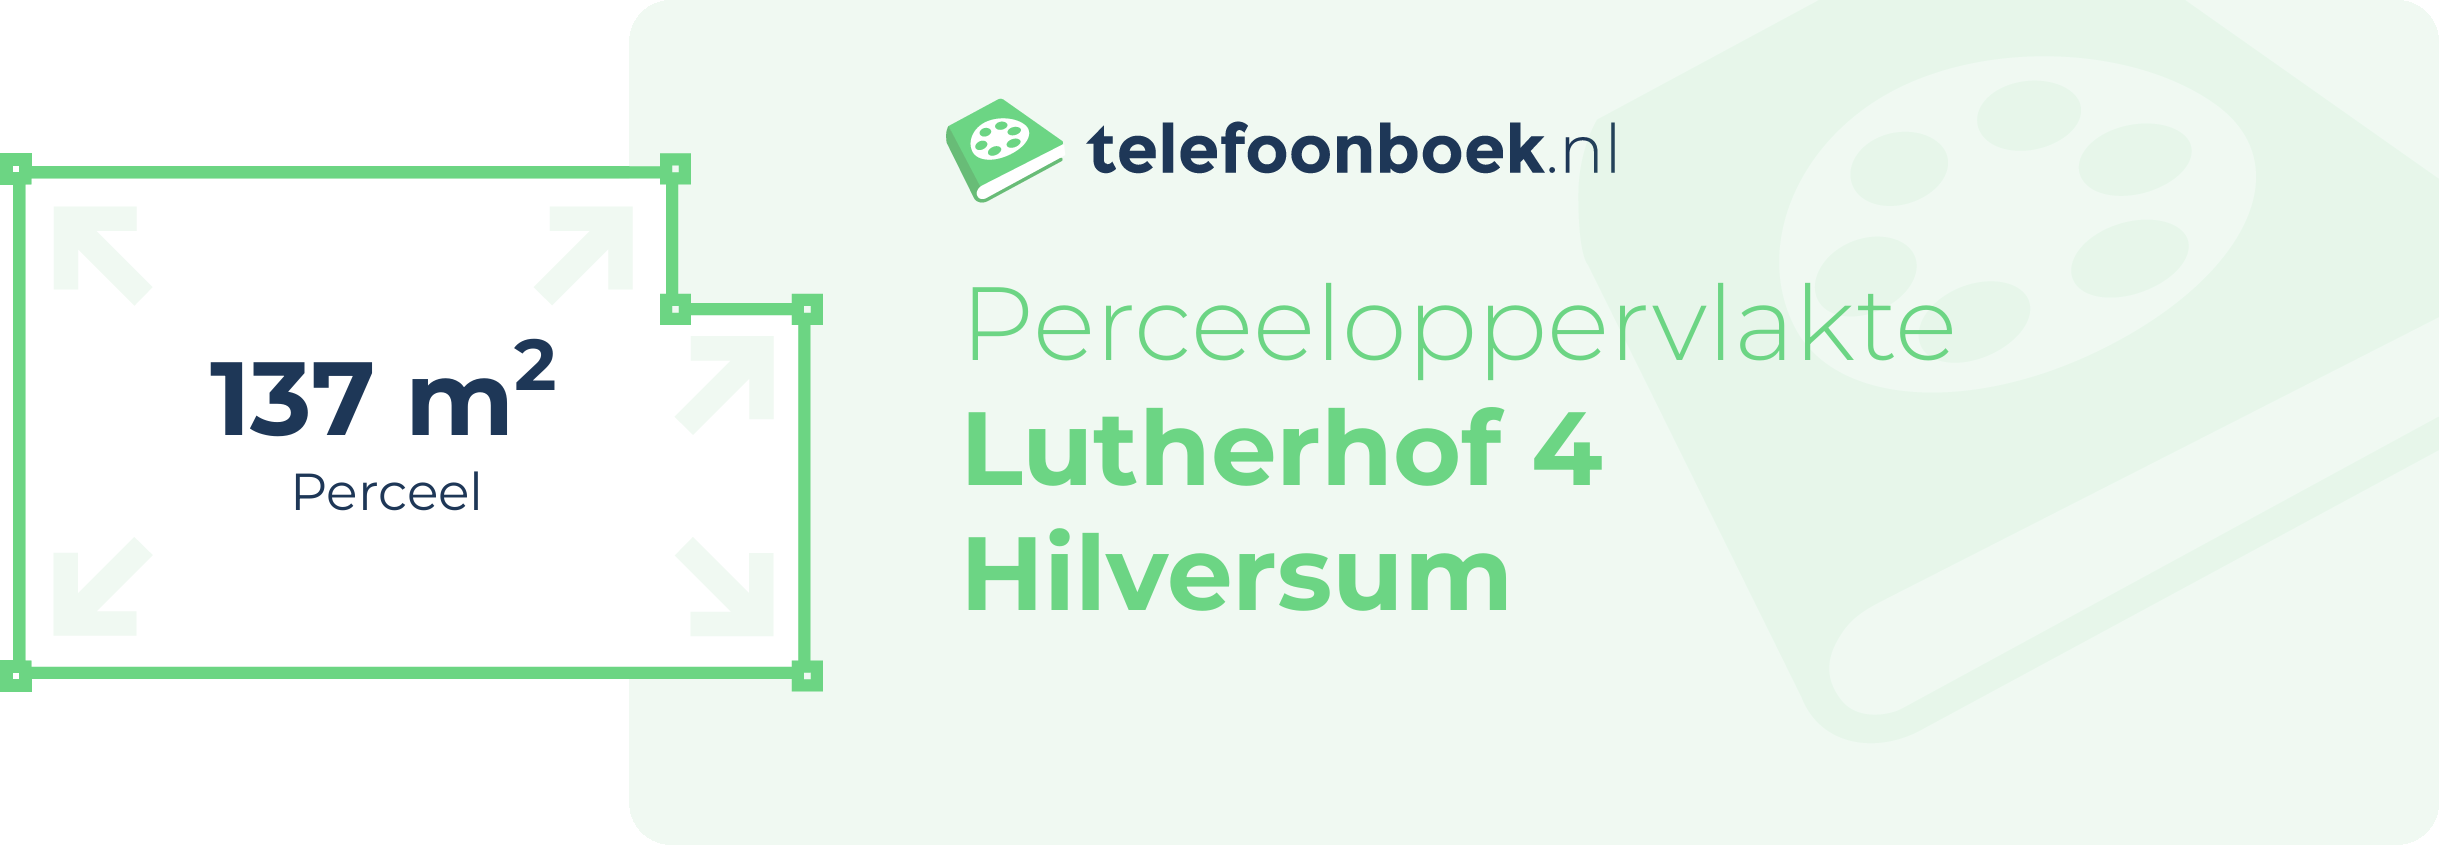 Perceeloppervlakte Lutherhof 4 Hilversum